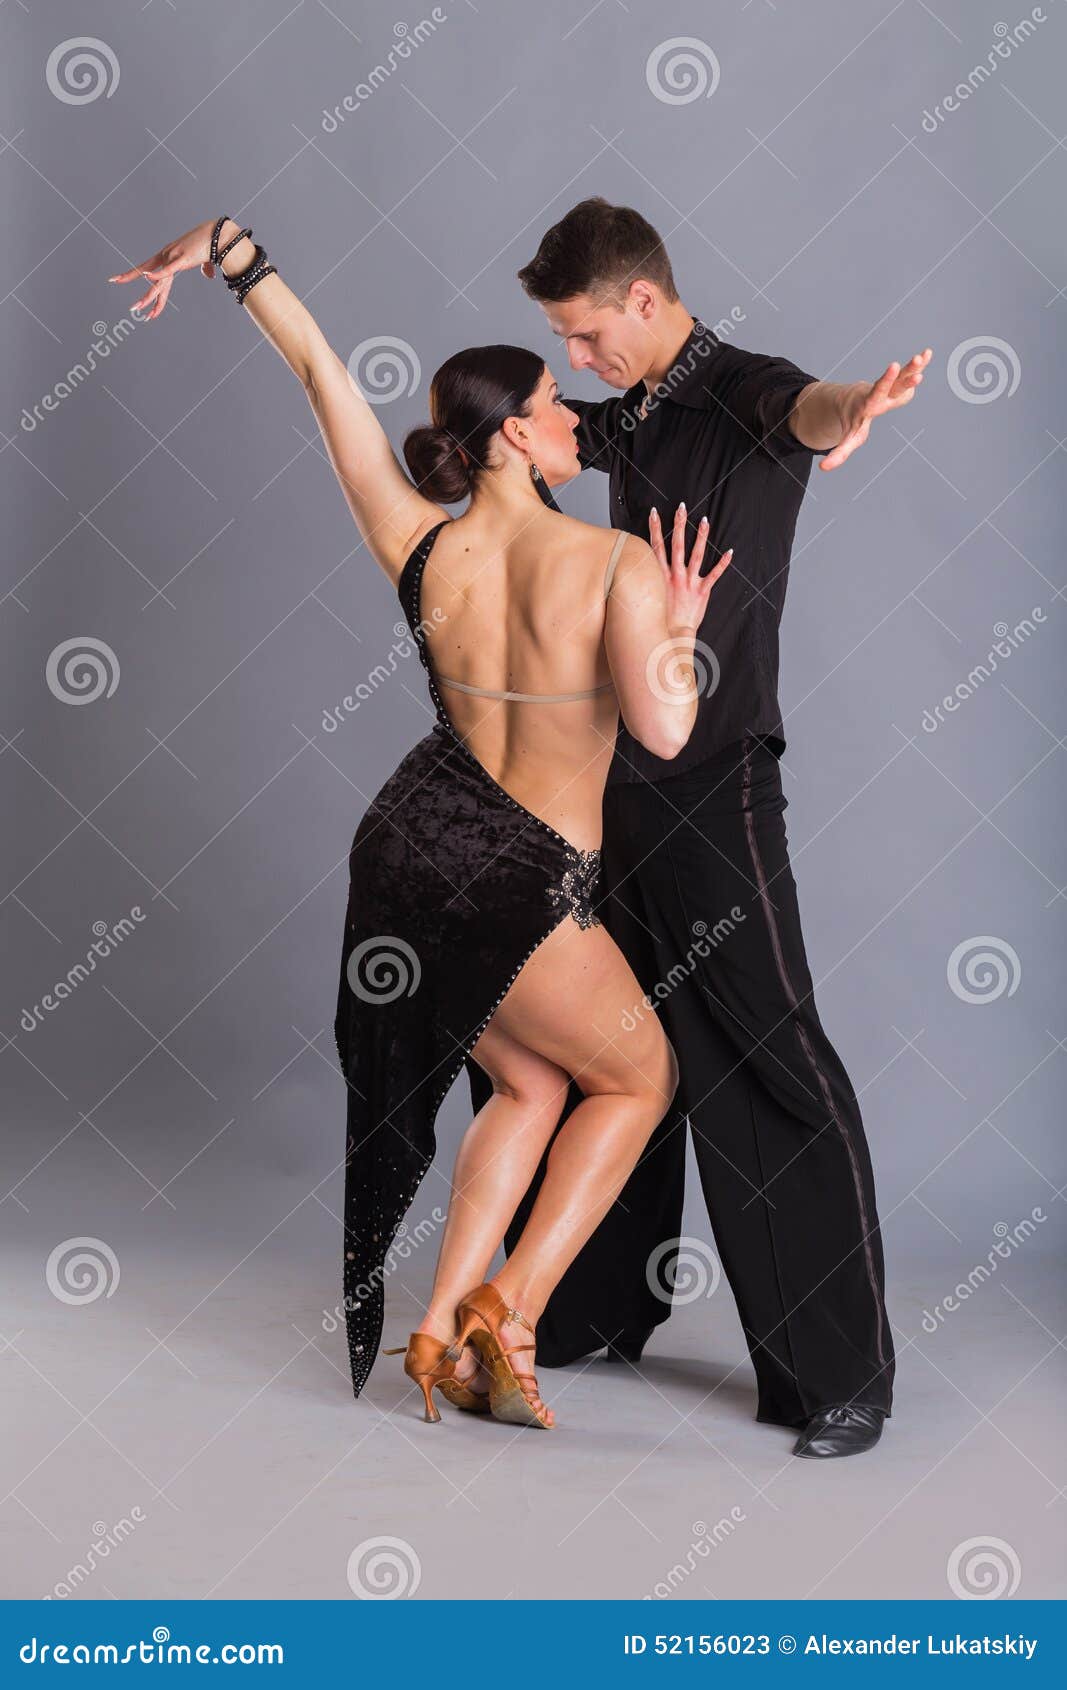 Dancers Stock Image Image Of Togetherness Partnership